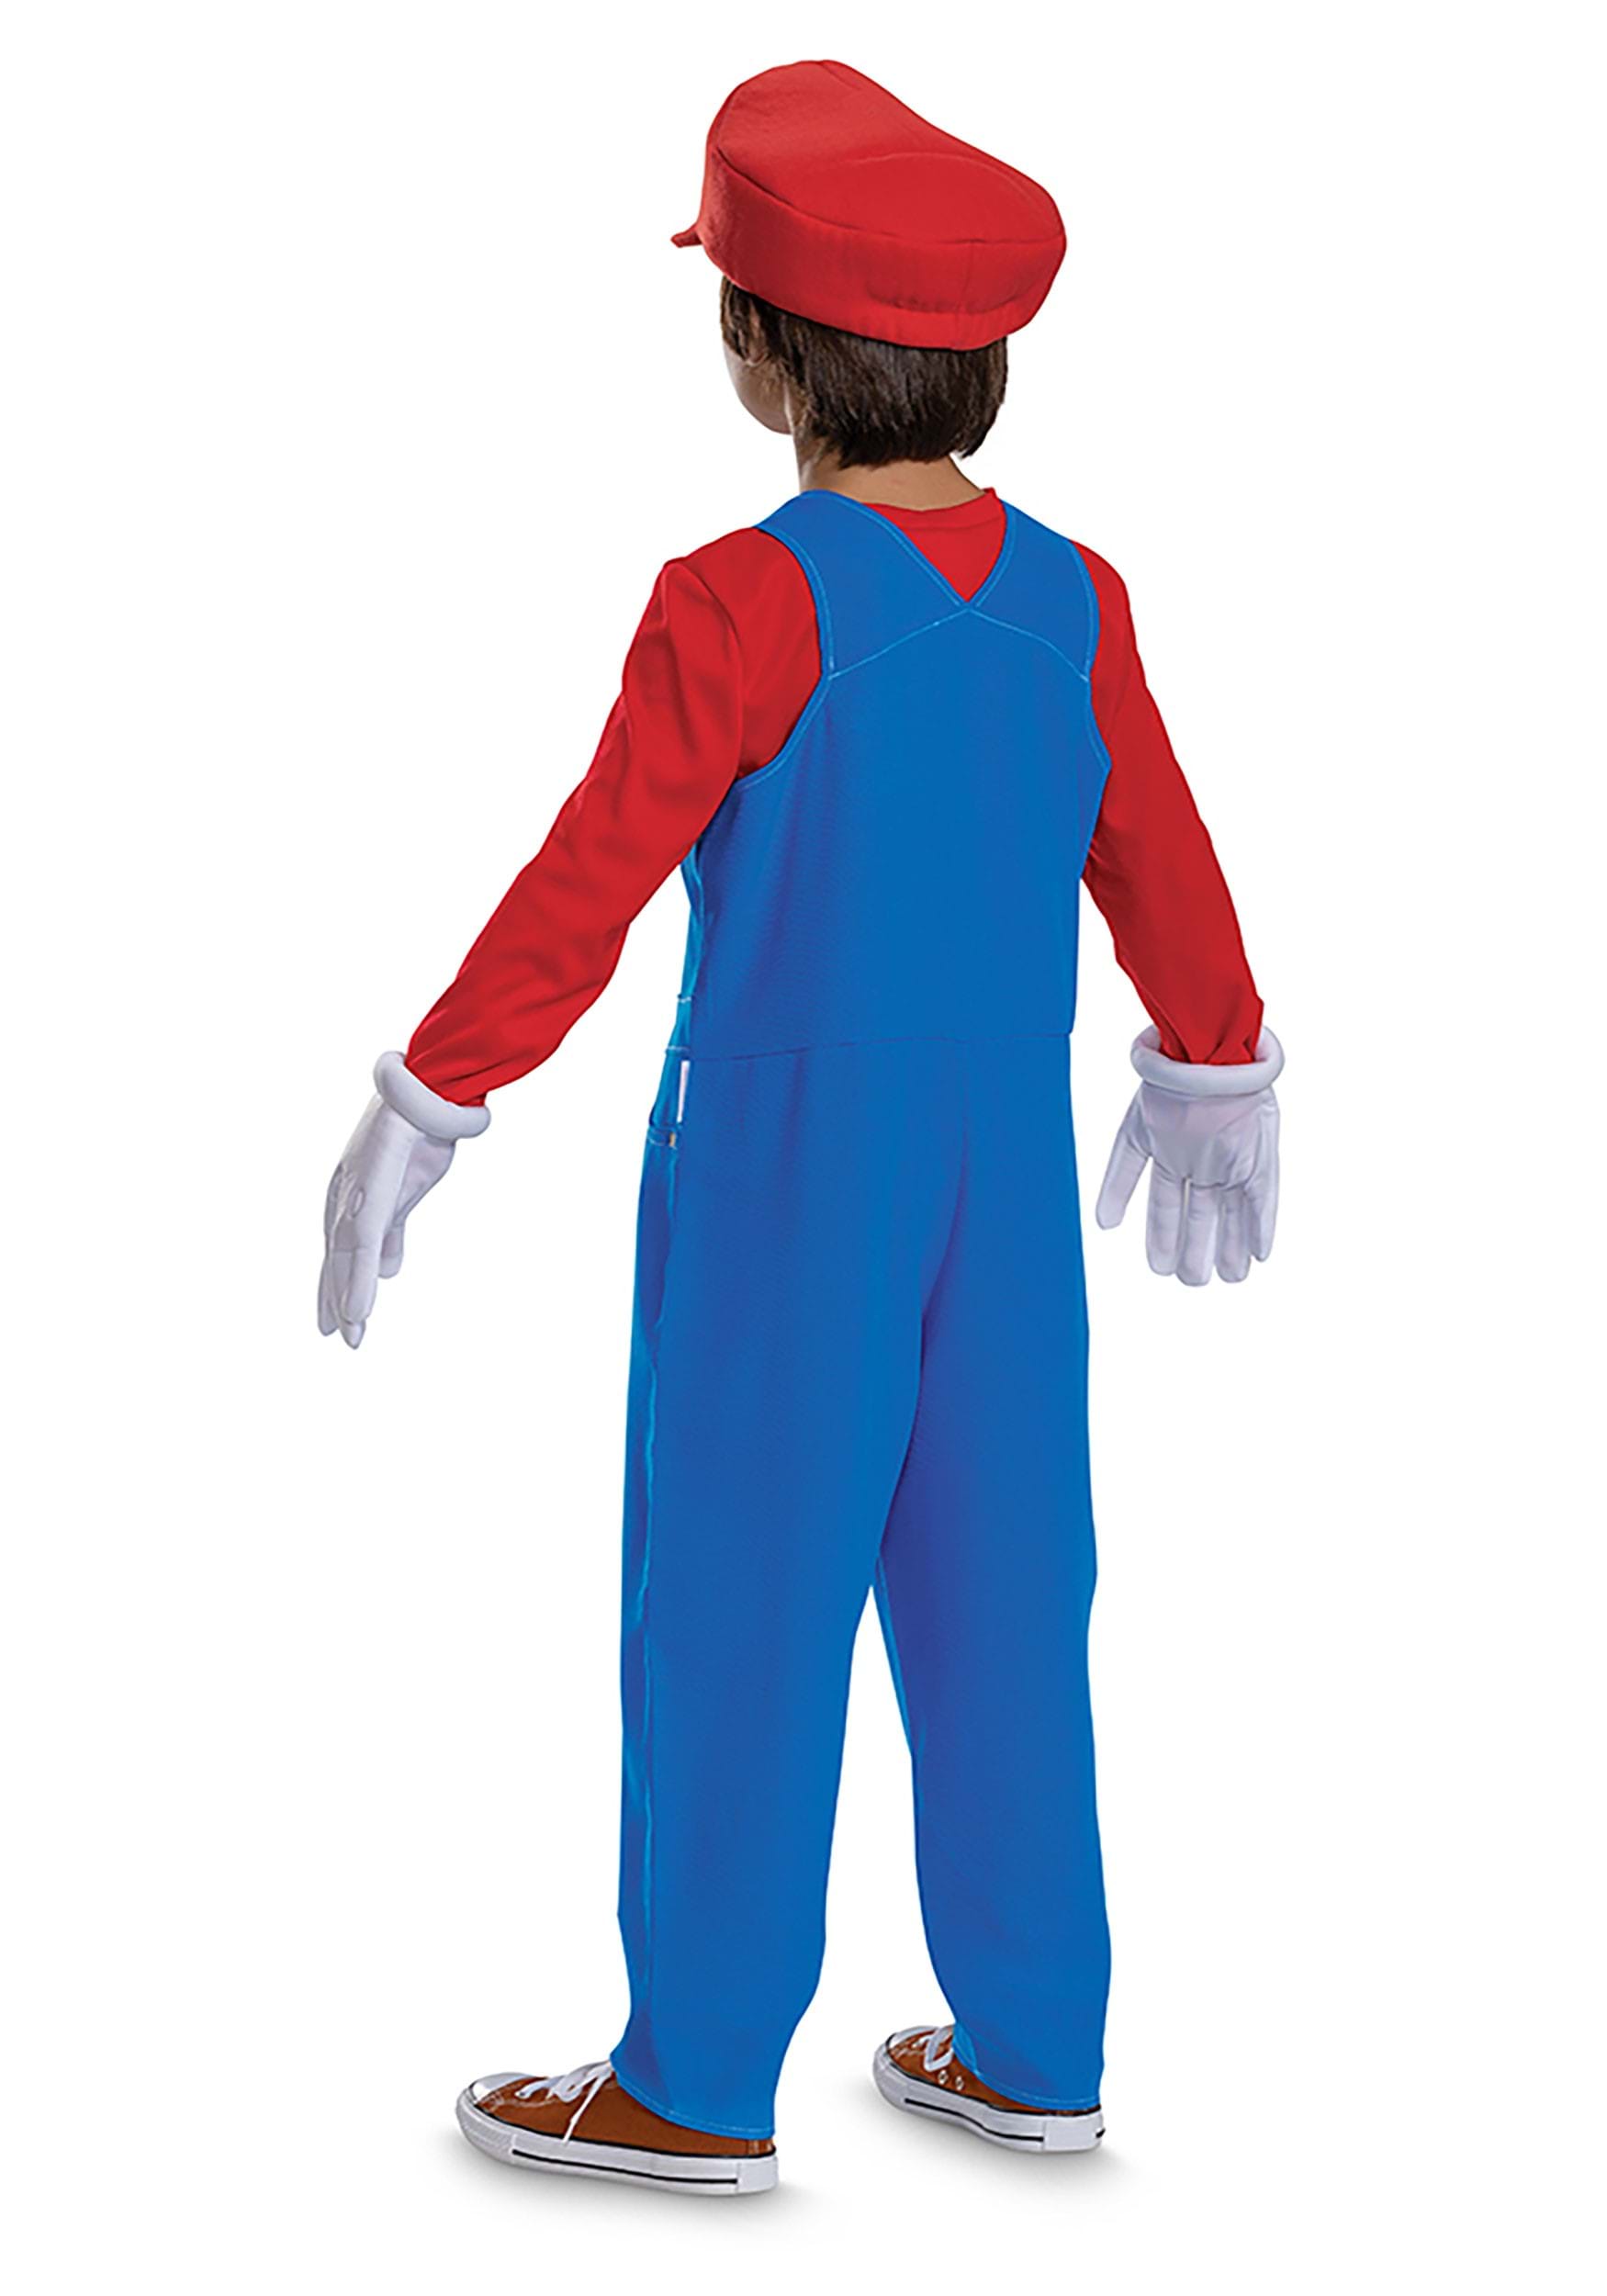 Kid's Super Mario Bros Premium Mario Fancy Dress Costume